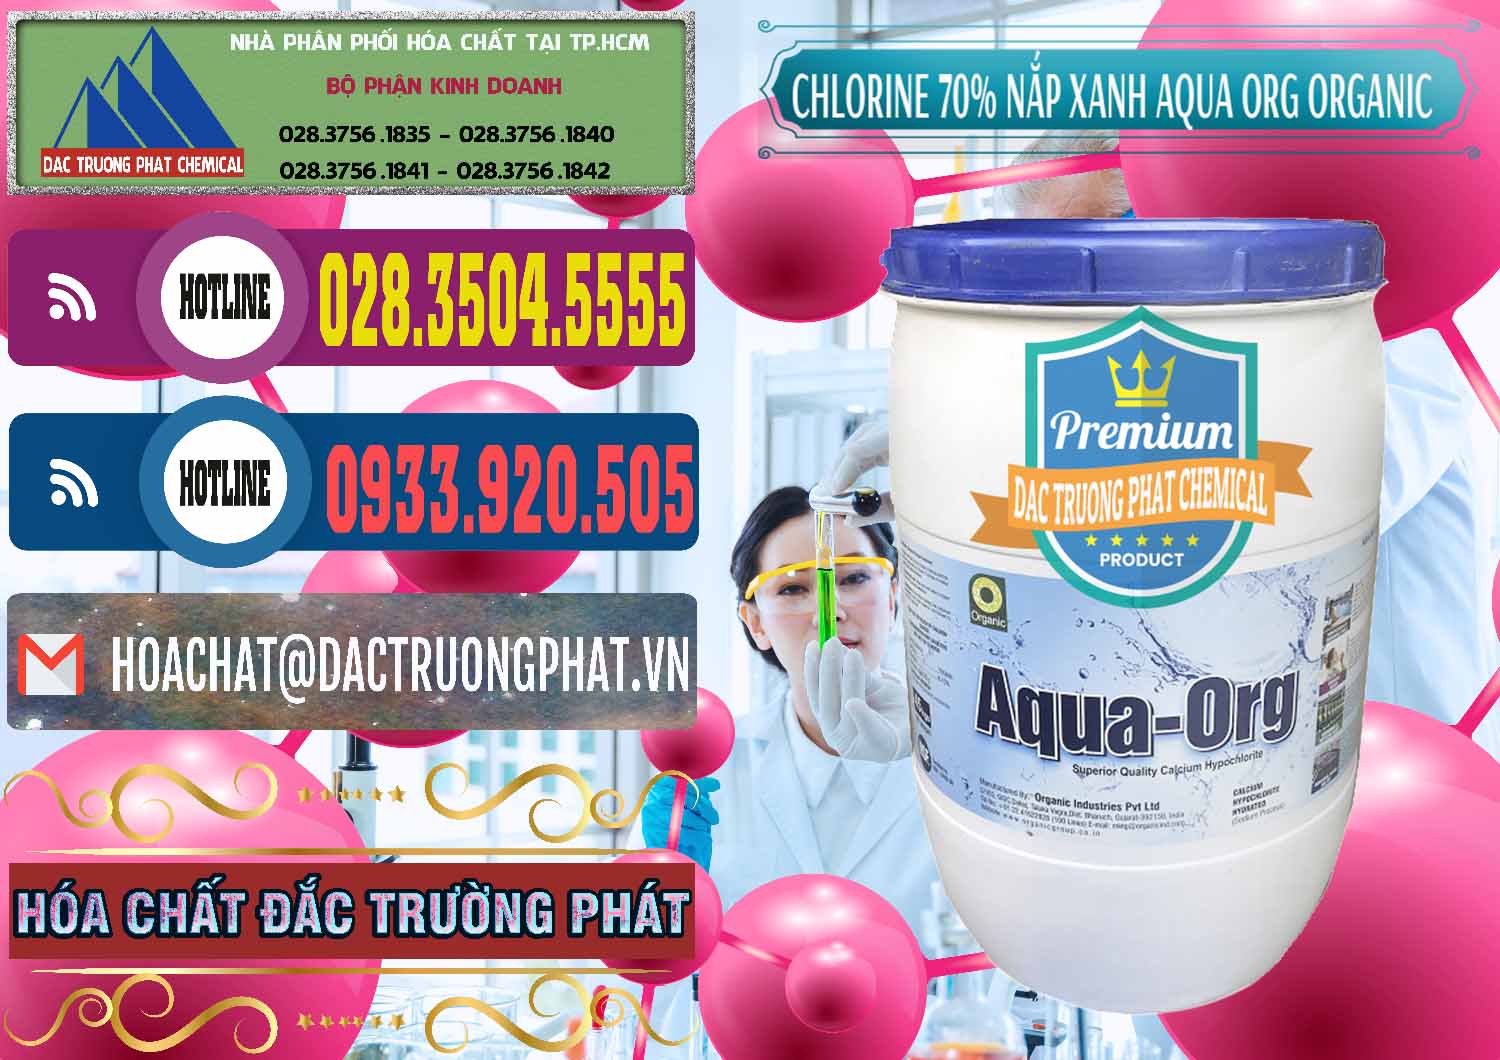 Công ty kinh doanh & bán Chlorine – Clorin 70% Thùng Tròn Nắp Xanh Aqua ORG Organic Ấn Độ India - 0247 - Bán và phân phối hóa chất tại TP.HCM - muabanhoachat.com.vn